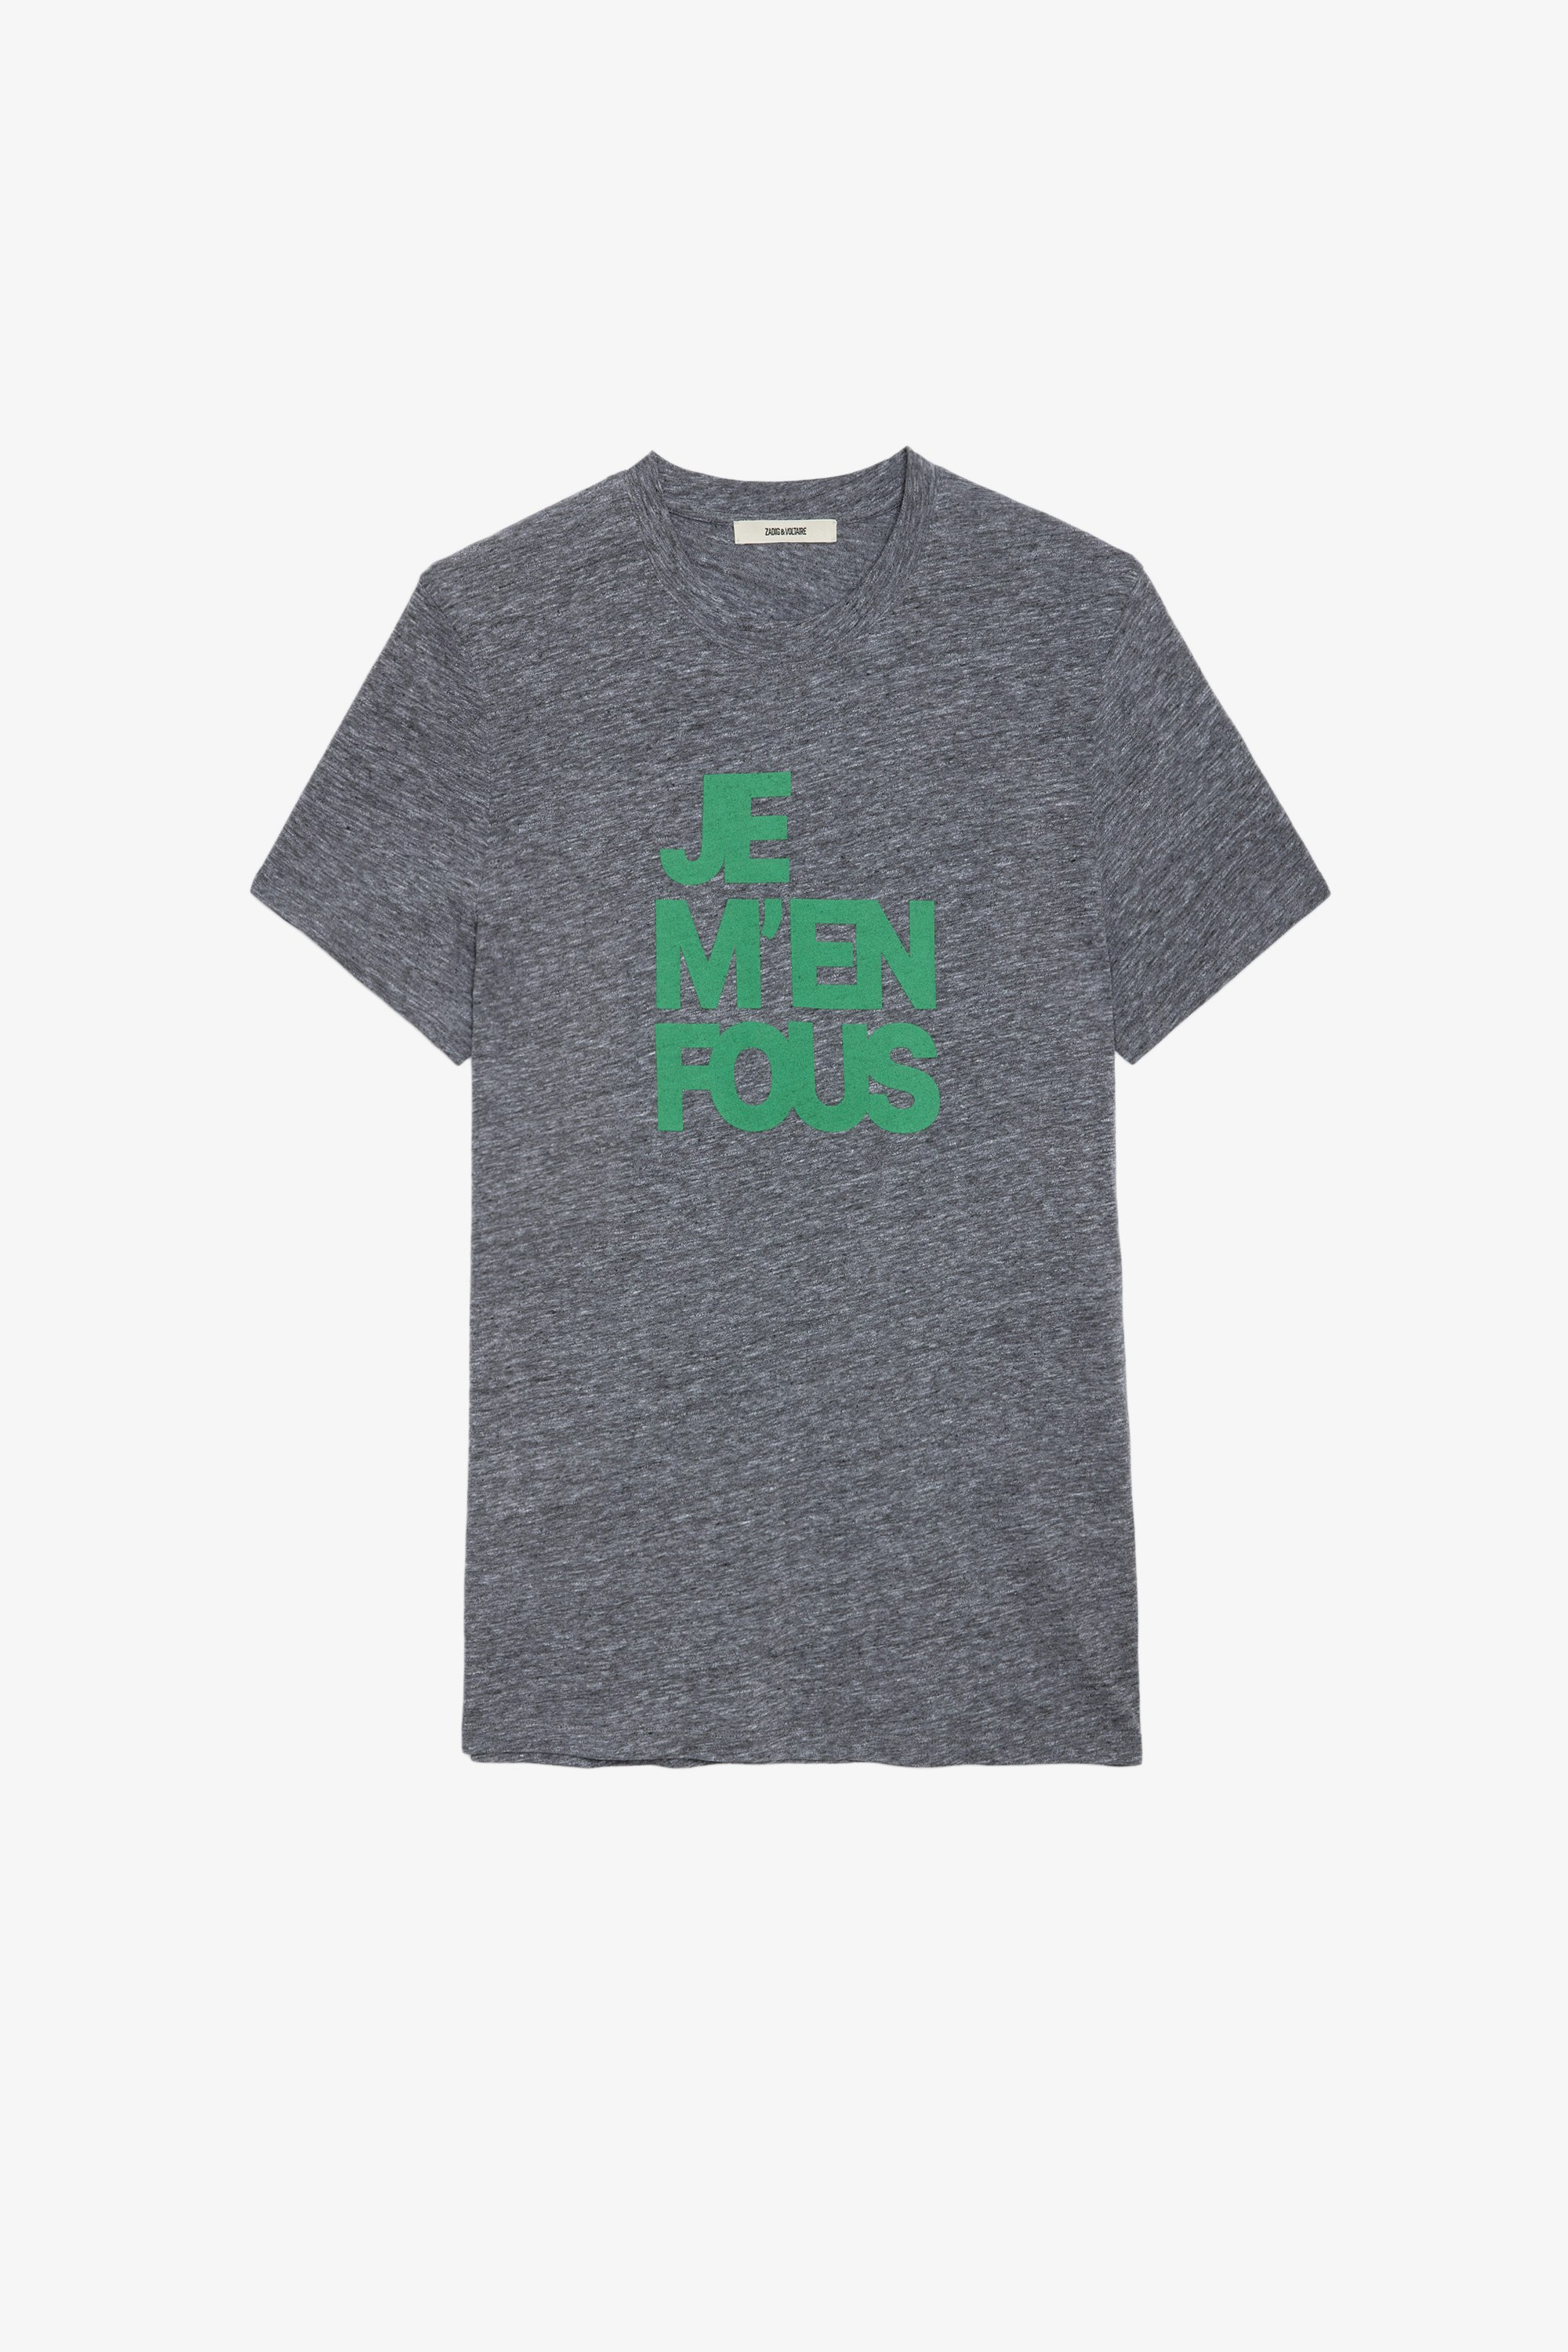 T-Shirt Tommy Herren-T-Shirt aus grauer Baumwolle mit der Aufschrift „Je m'en fous“